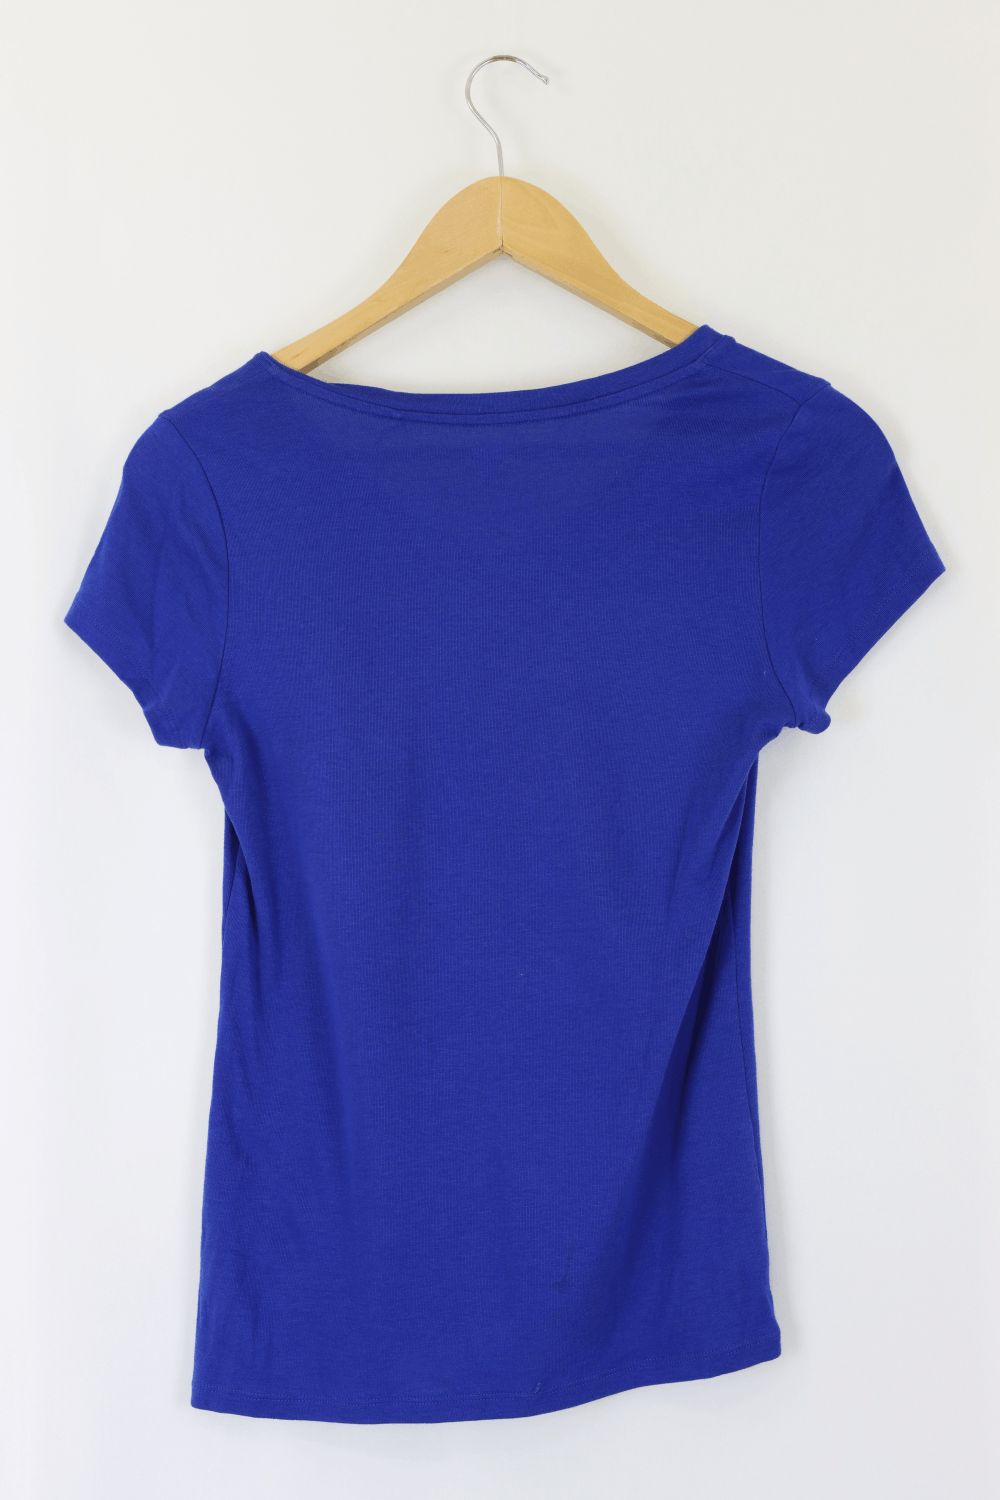 Uniqlo V Neck T shirt Blue XS